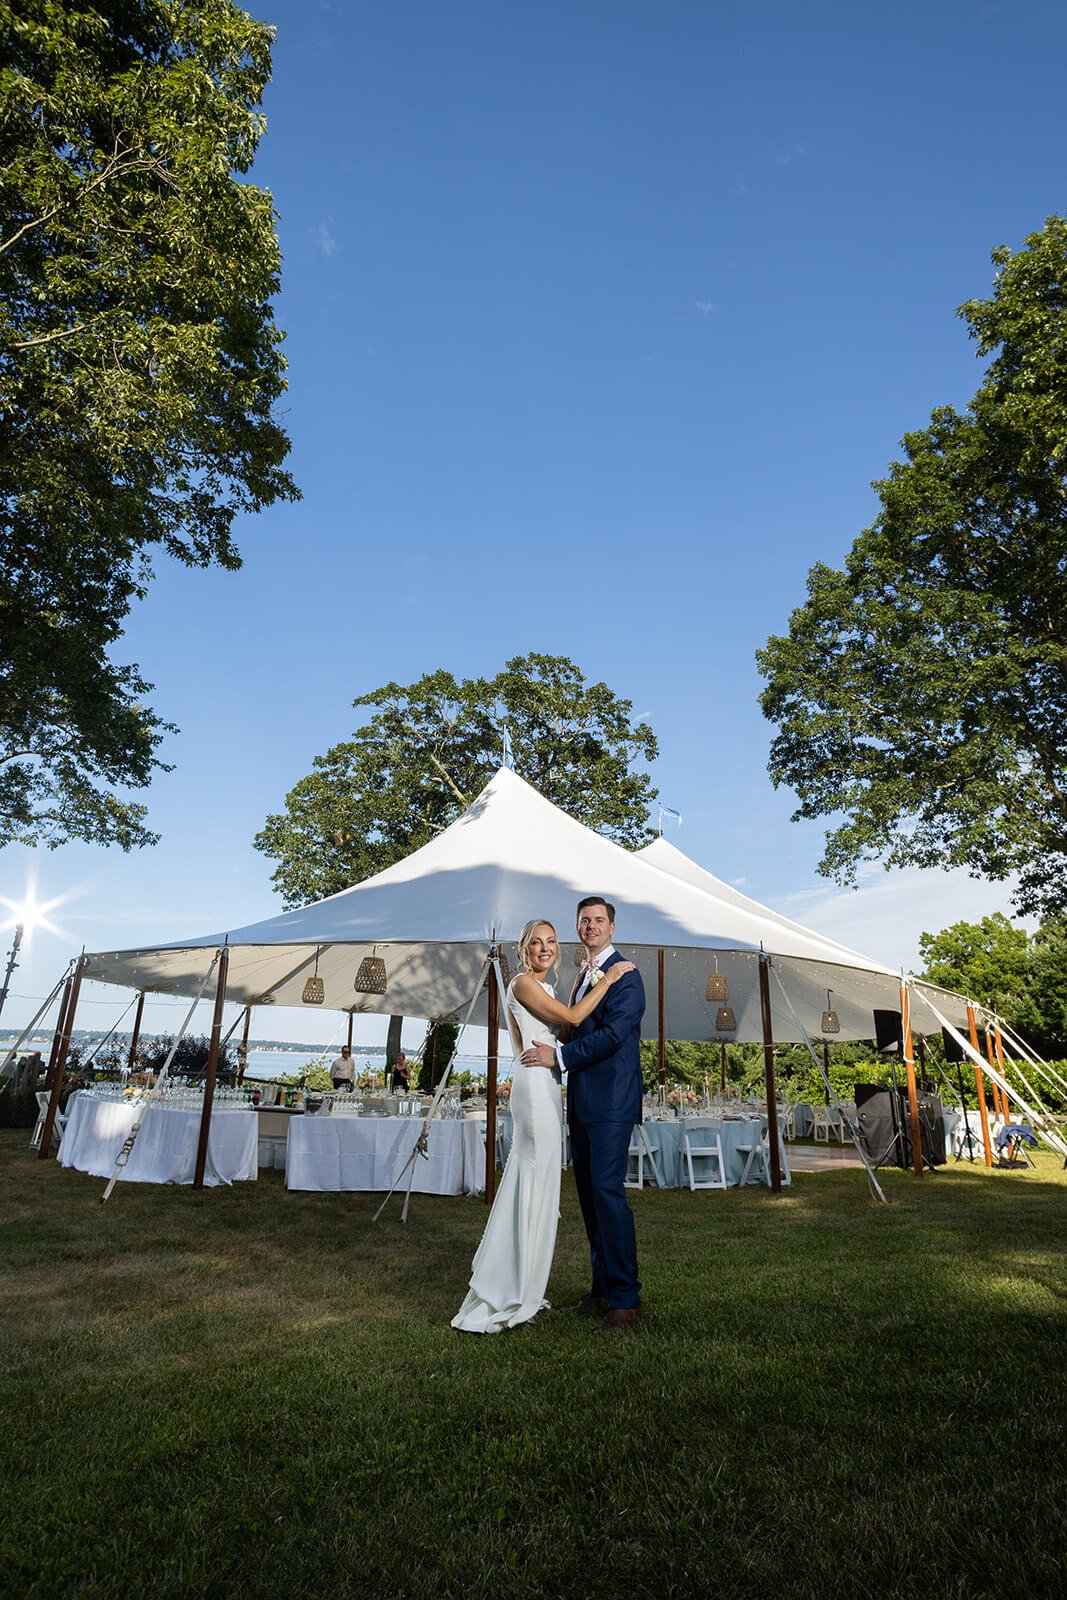 Luxury tented backyard wedding in Long Island, New York, overlooking Huntington Bay.